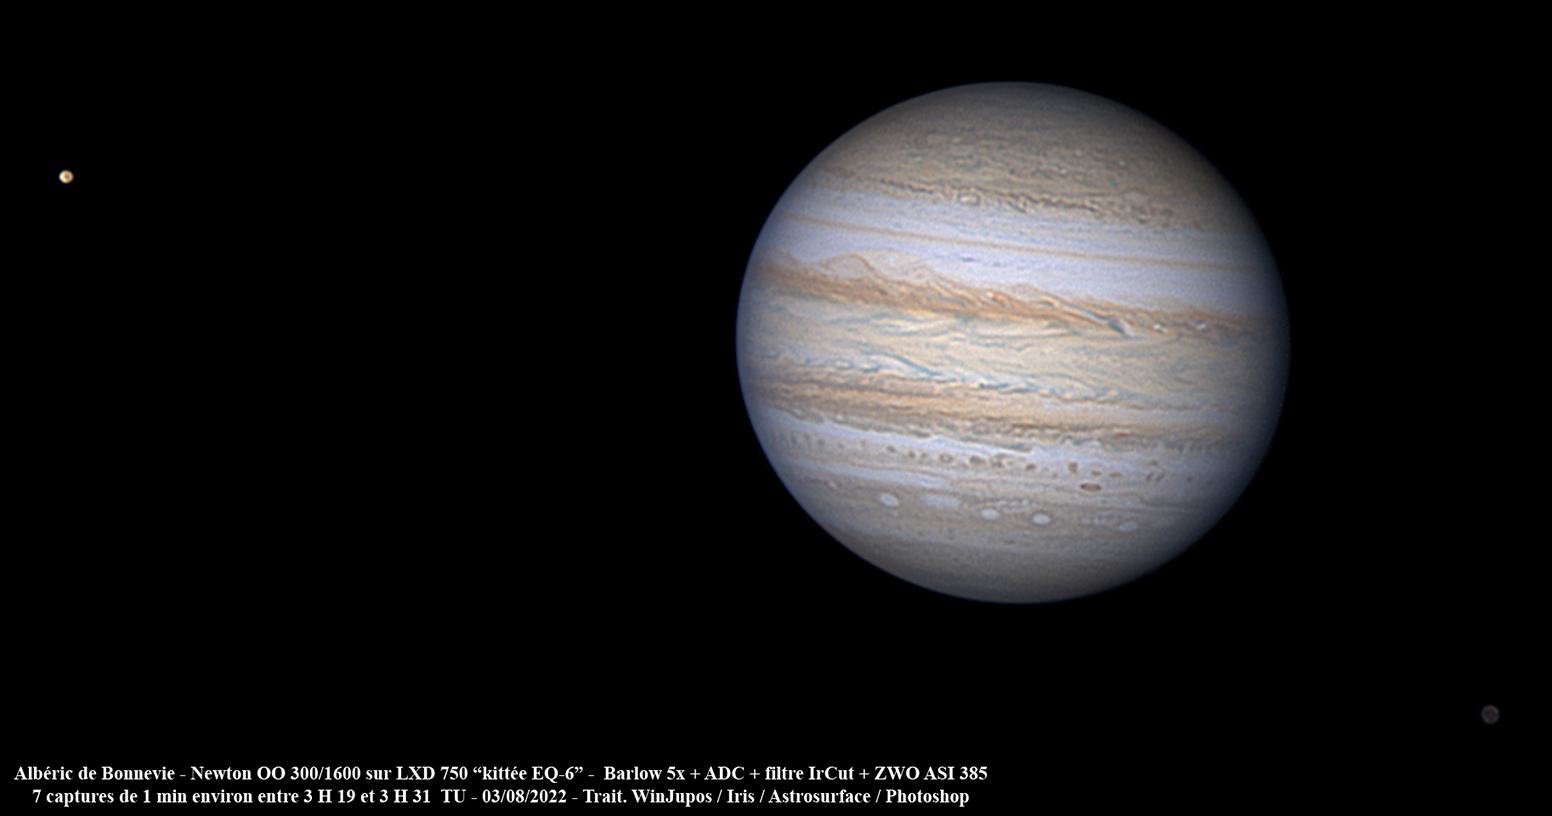 62fc1d135cfb6_Jupiter-sats-T300-85-03082022-contraste.jpg.b5edf1c72e0db09e6ba992c1412f8d15.jpg